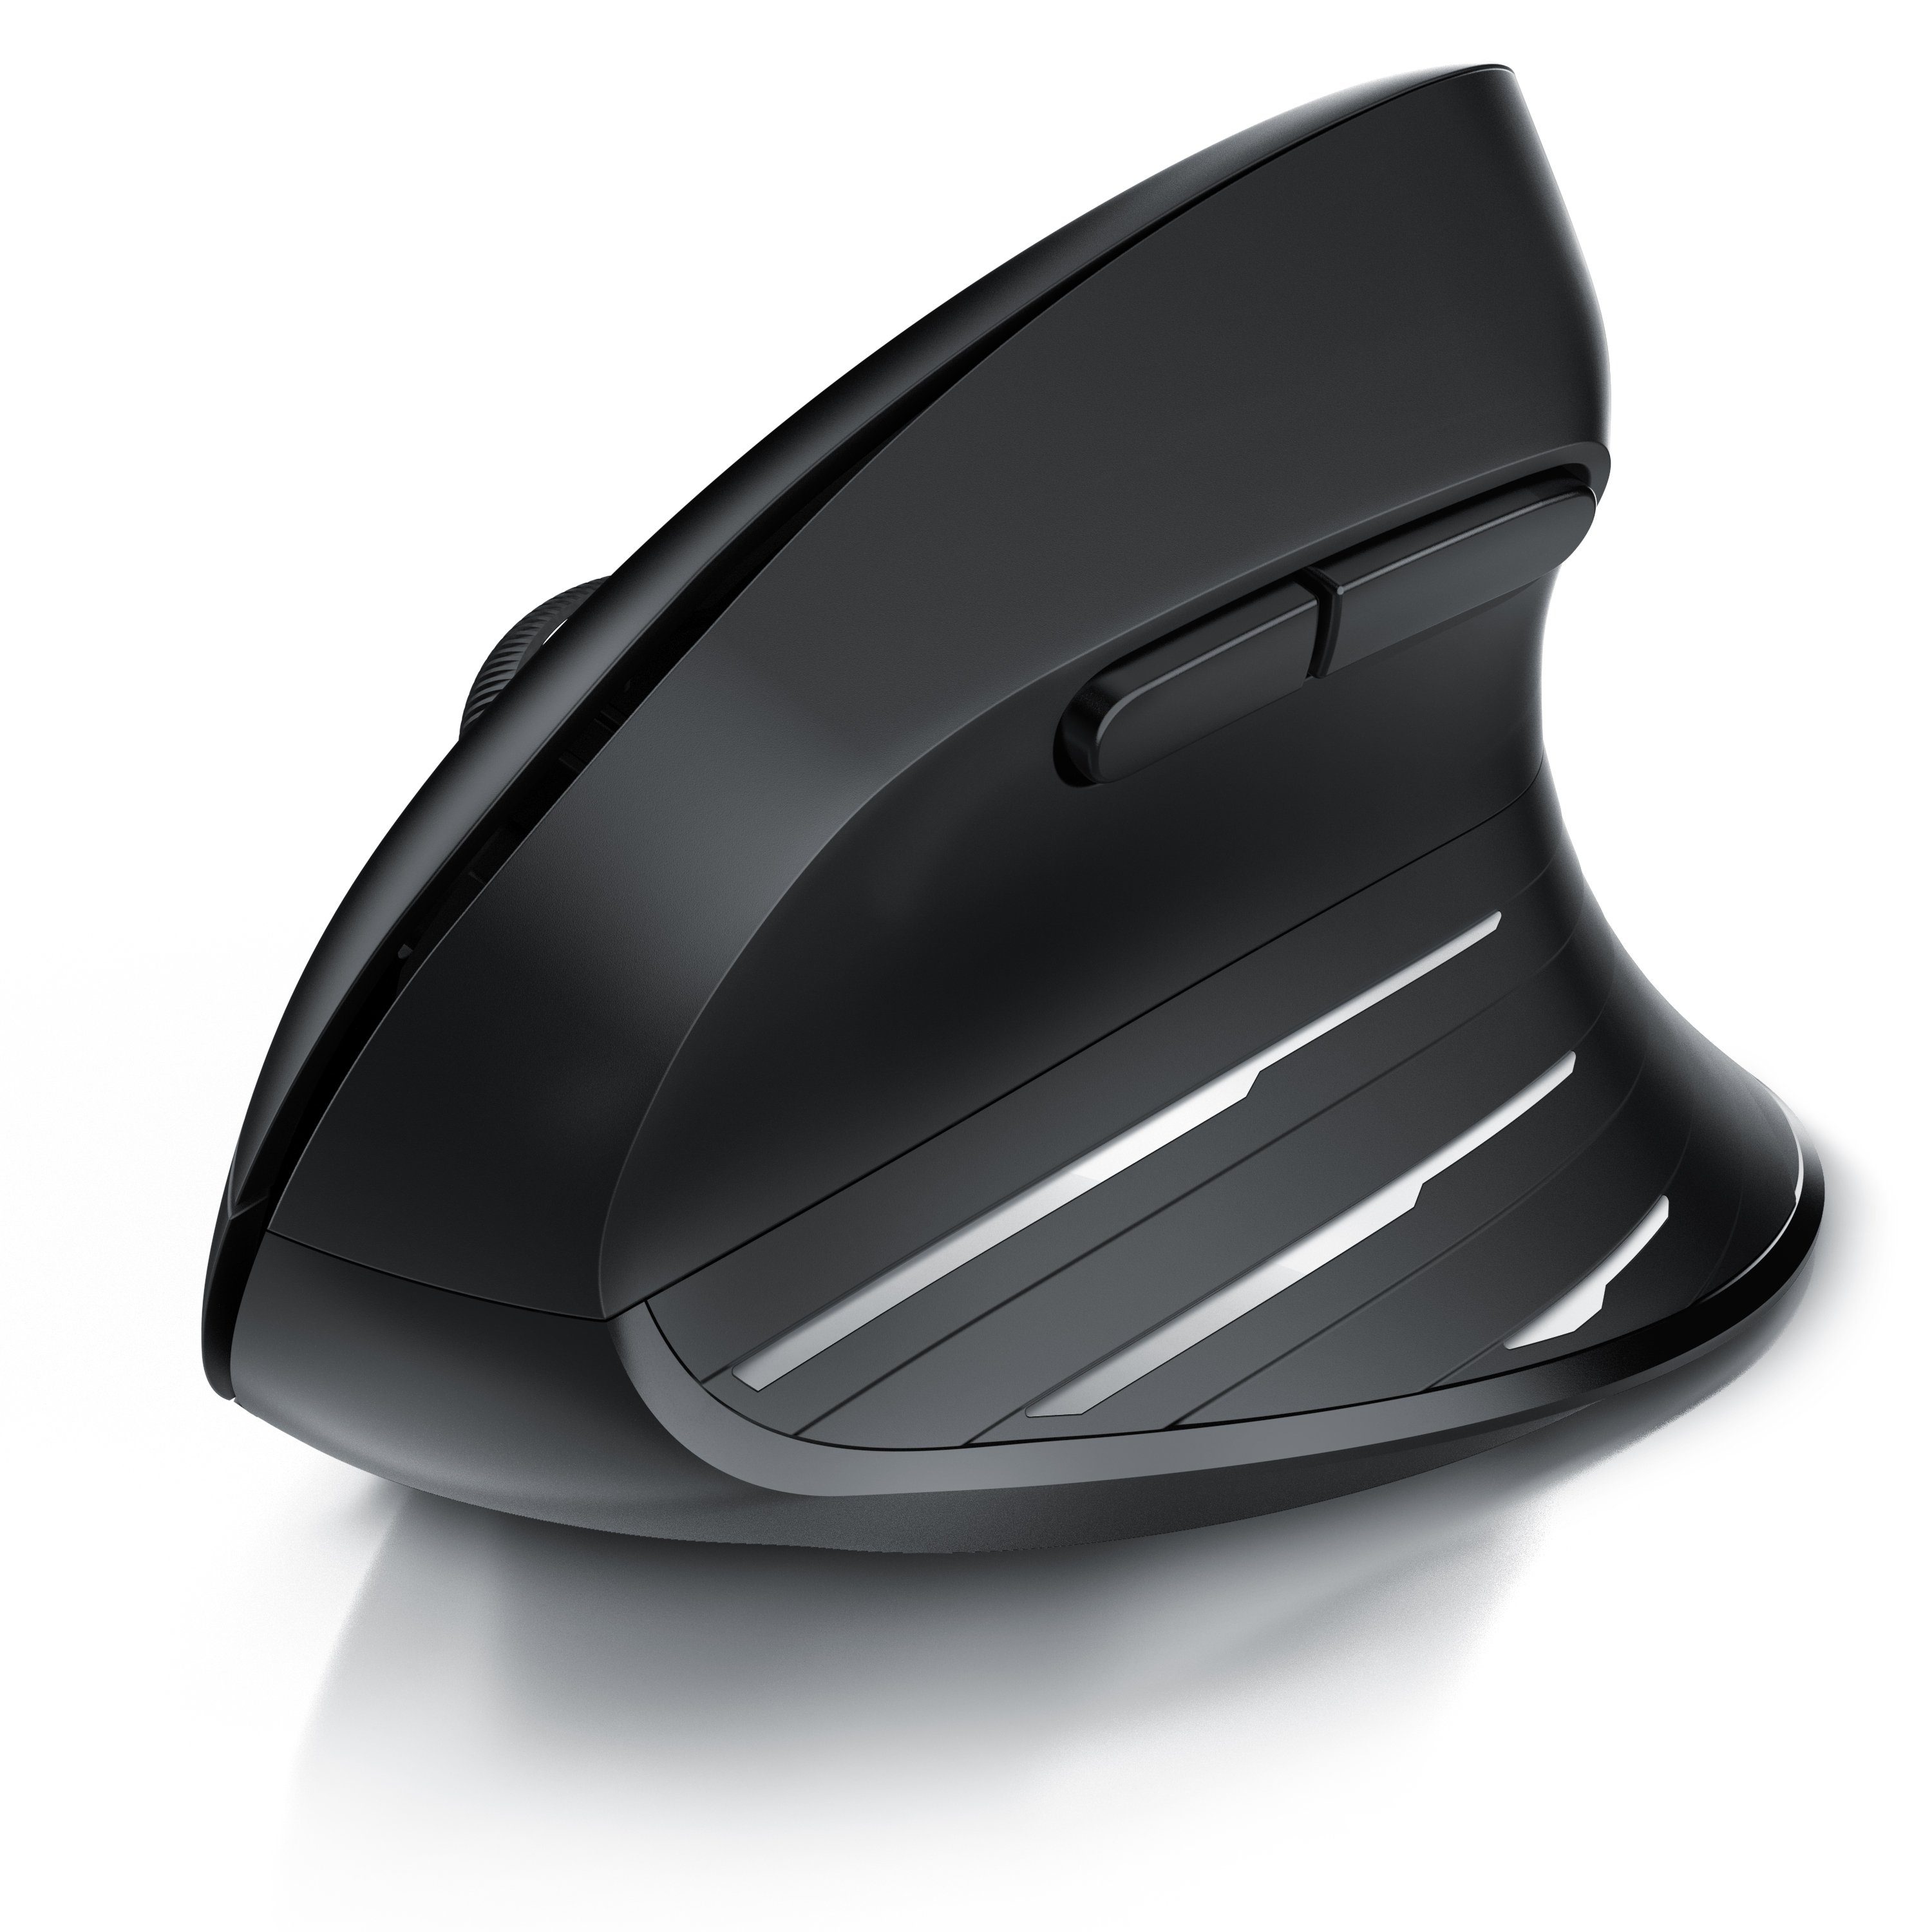 CSL ergonomische Maus (Funk, Kabellose Mouse 2,4 GHz, 1000-2400 DPI, Wireless, für PC und Mac)